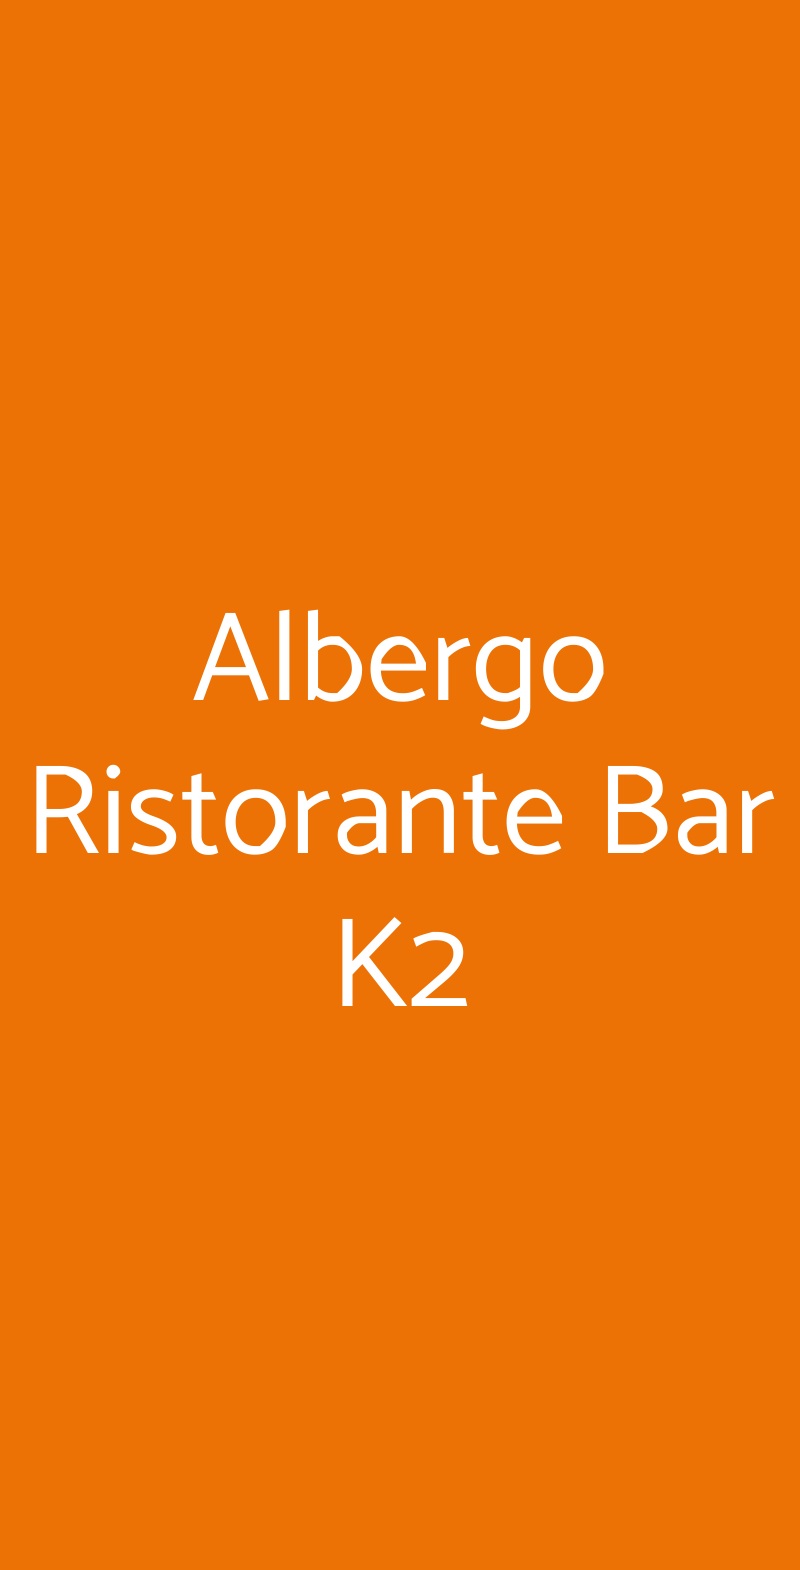 Albergo Ristorante Bar K2 Roana menù 1 pagina